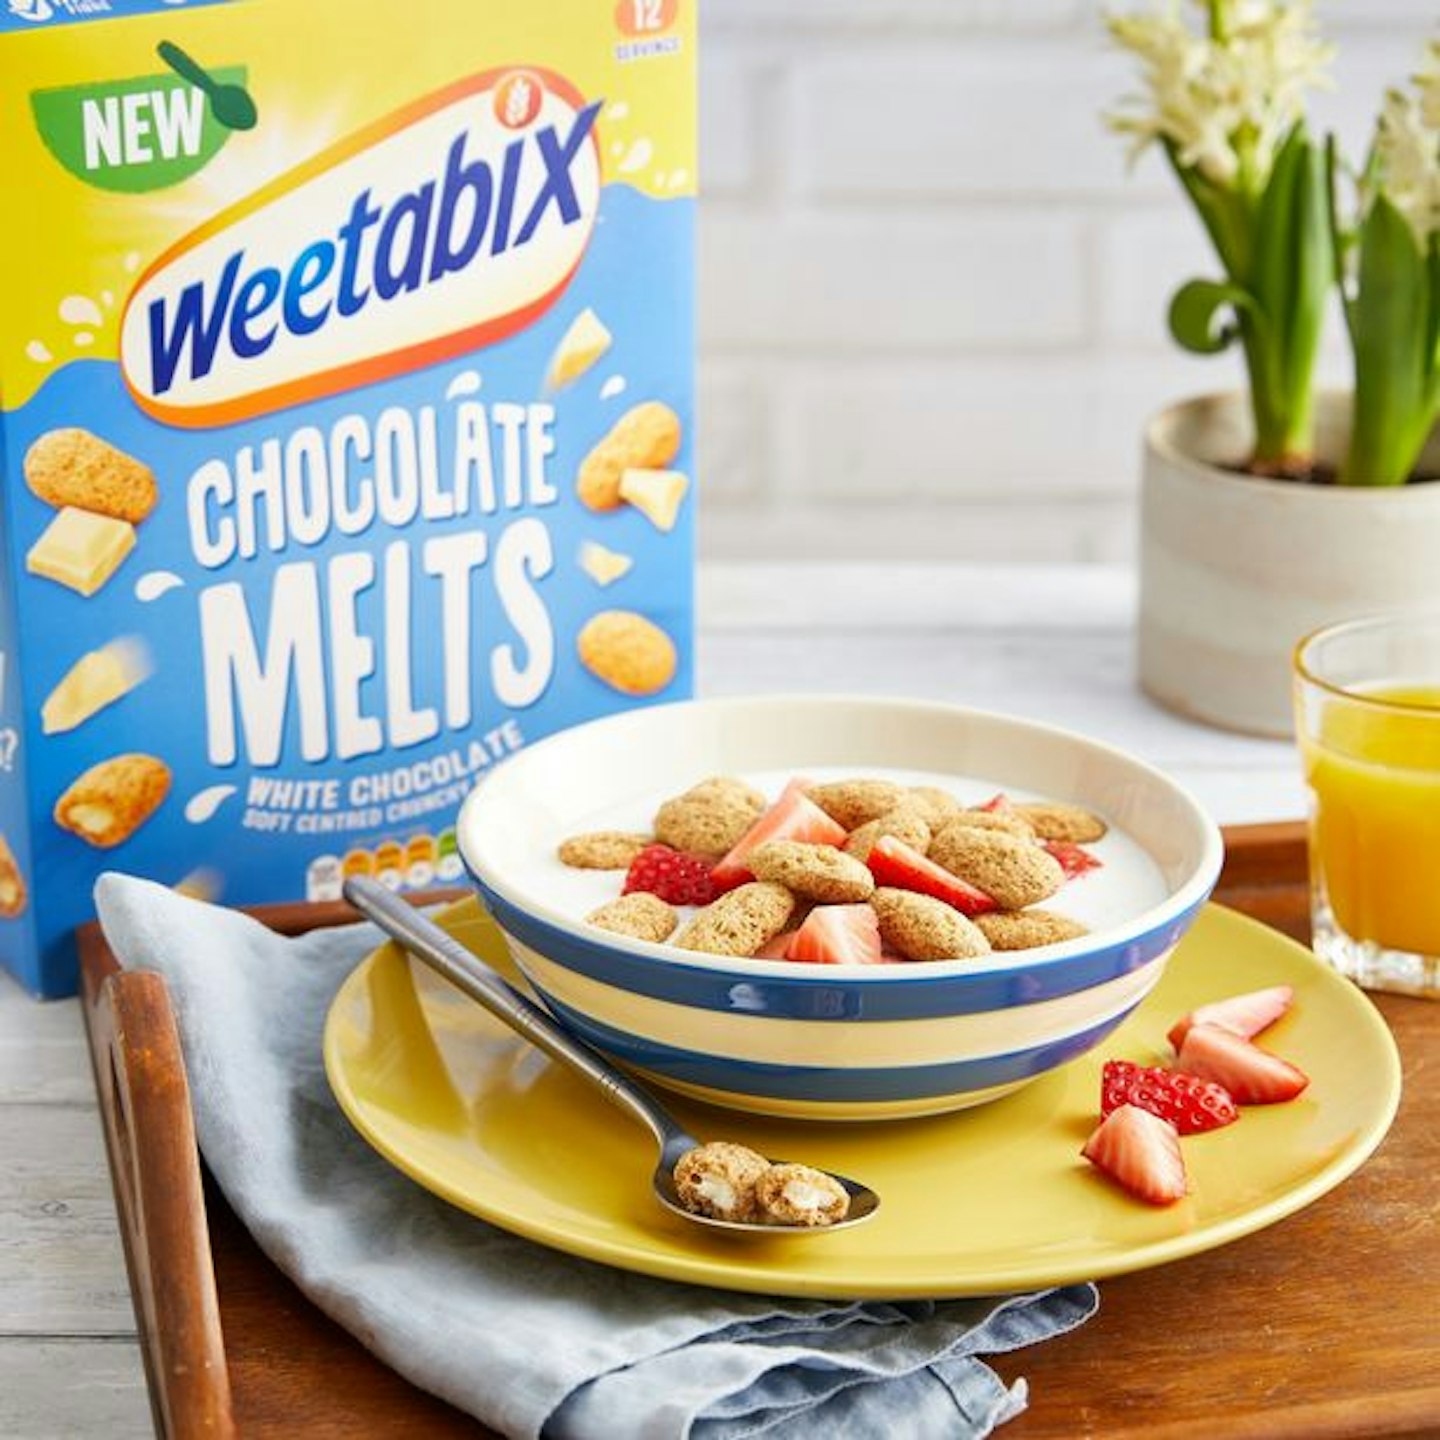 Weetabix Chocolate - Weetabix Cereals